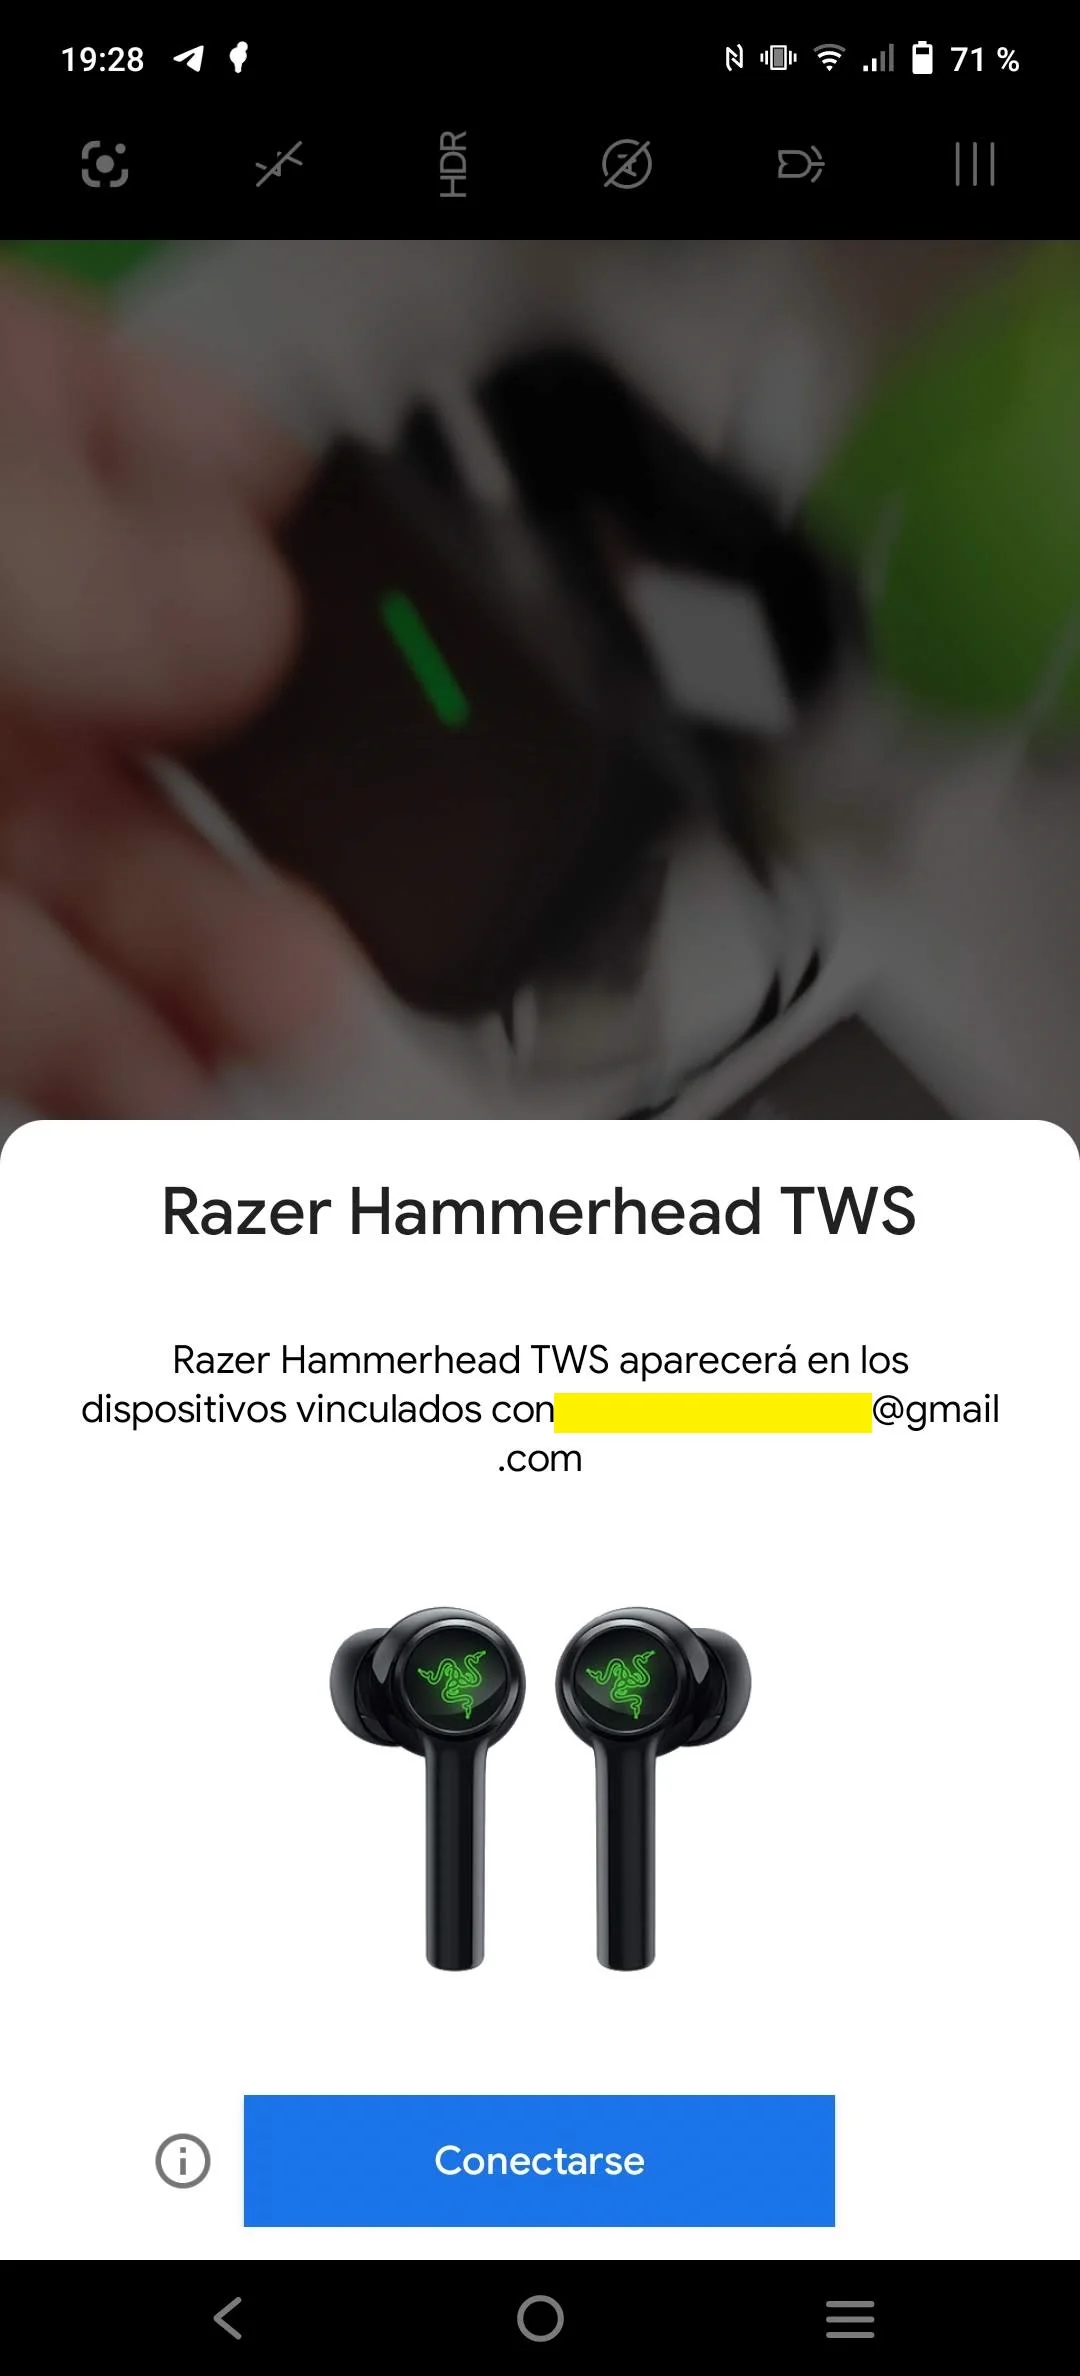 Razer Hammerhead TWS 2, análisis y opinión